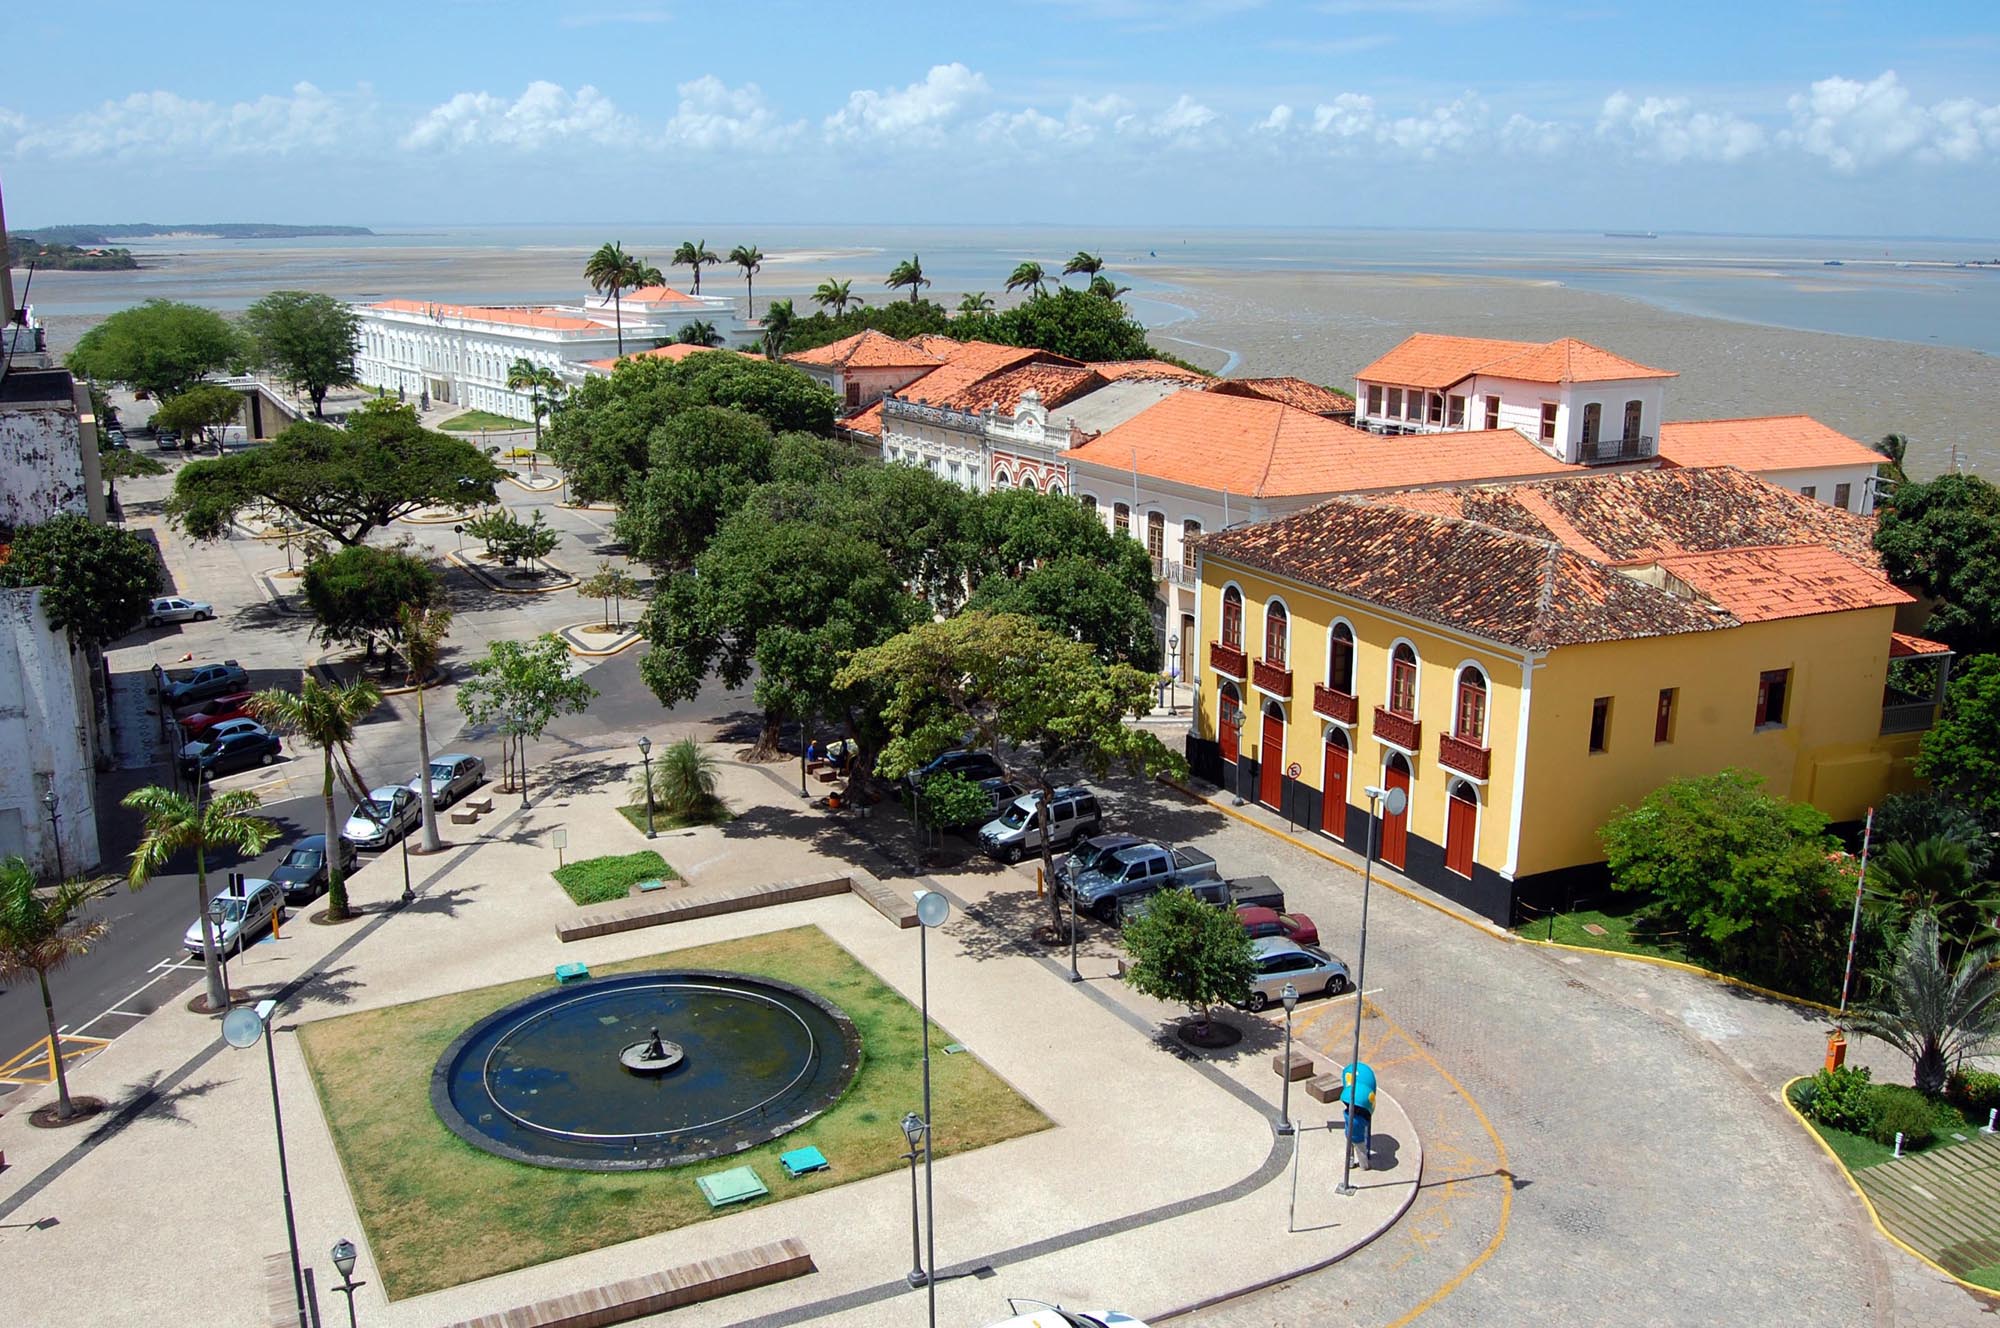 Aniversário de São Luís do Maranhão - 399 anos